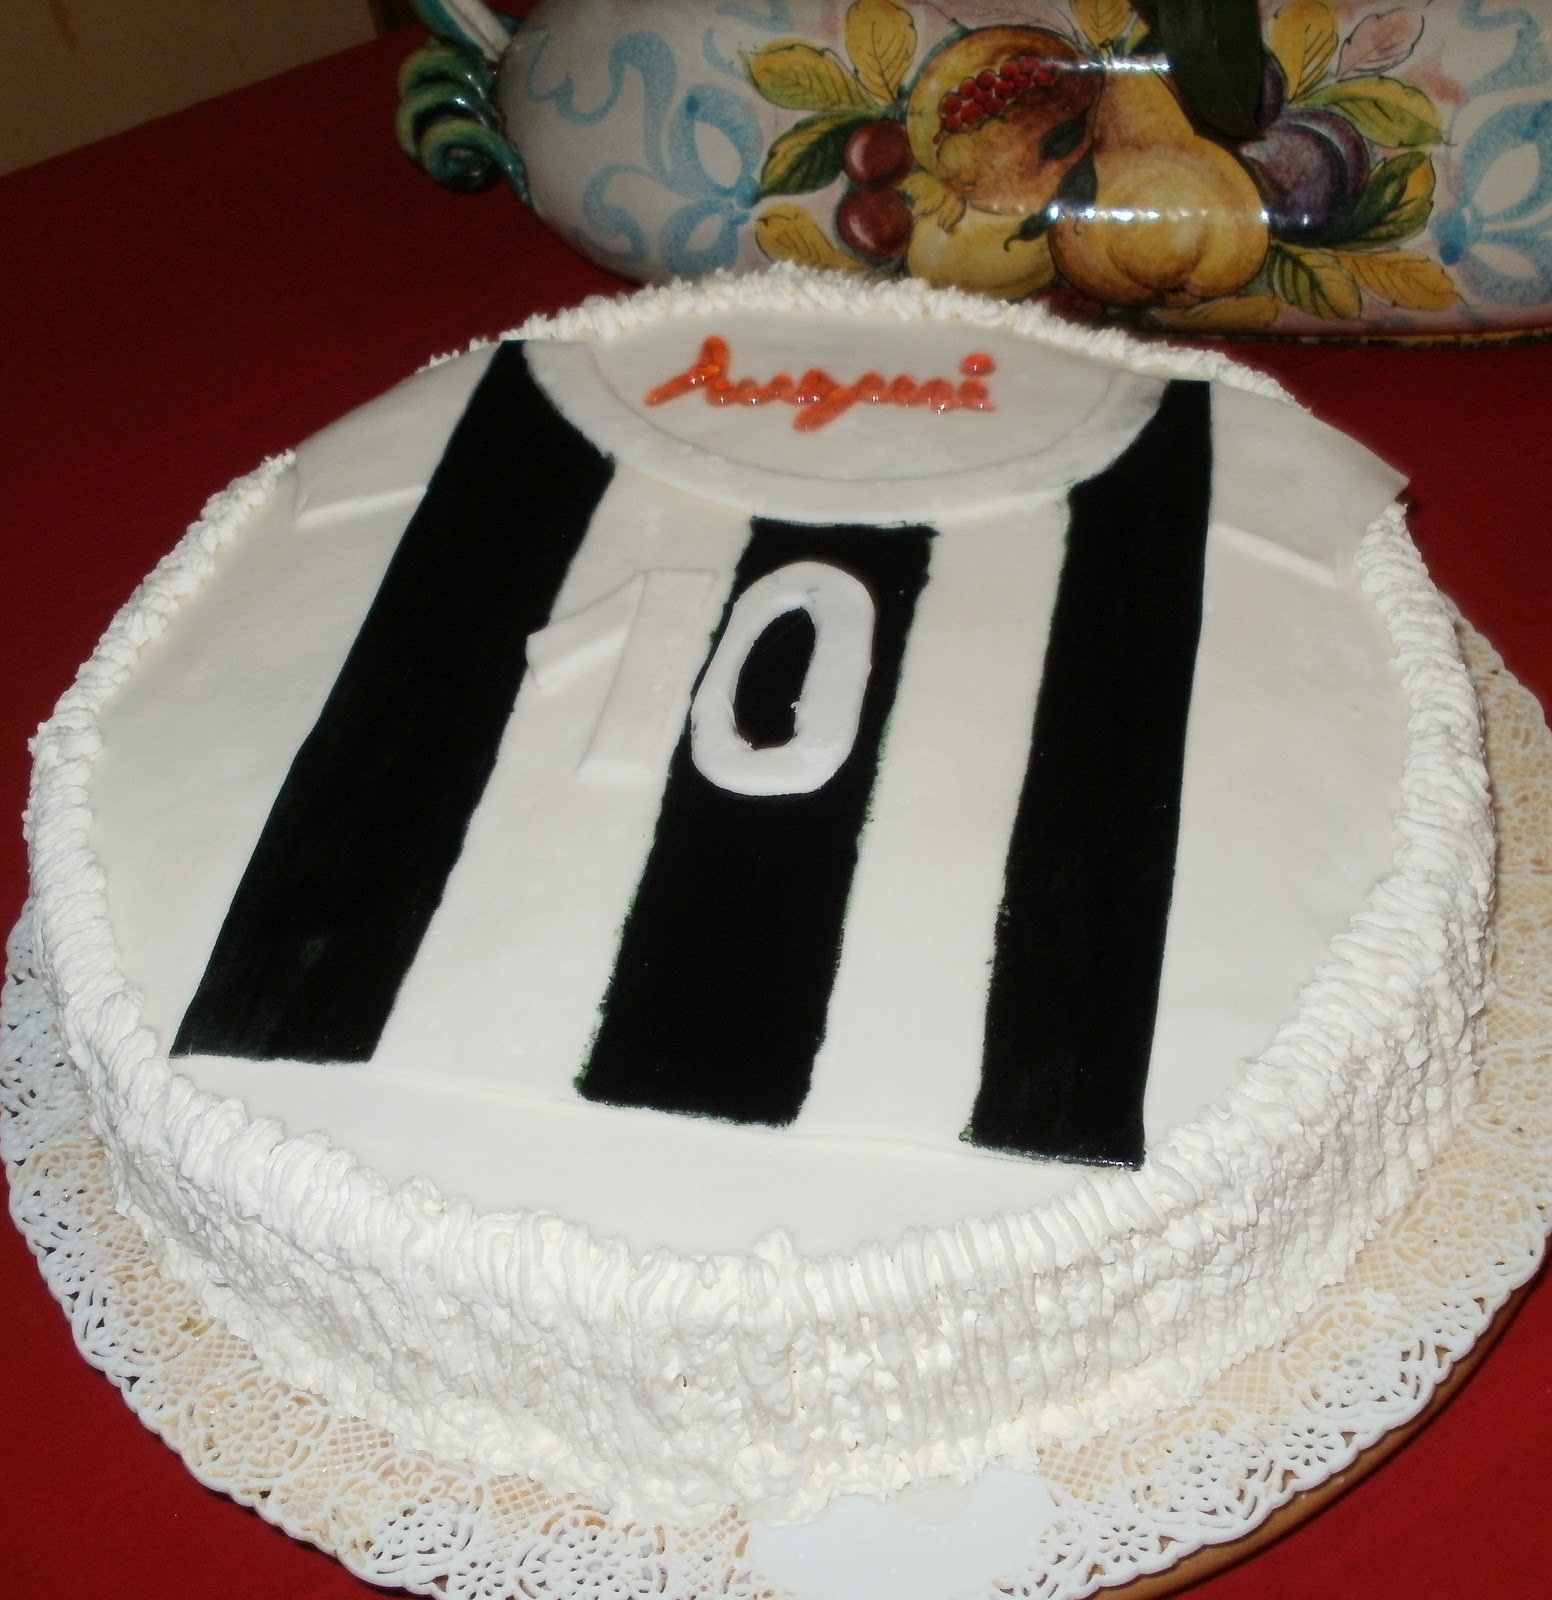 Torta Juventus